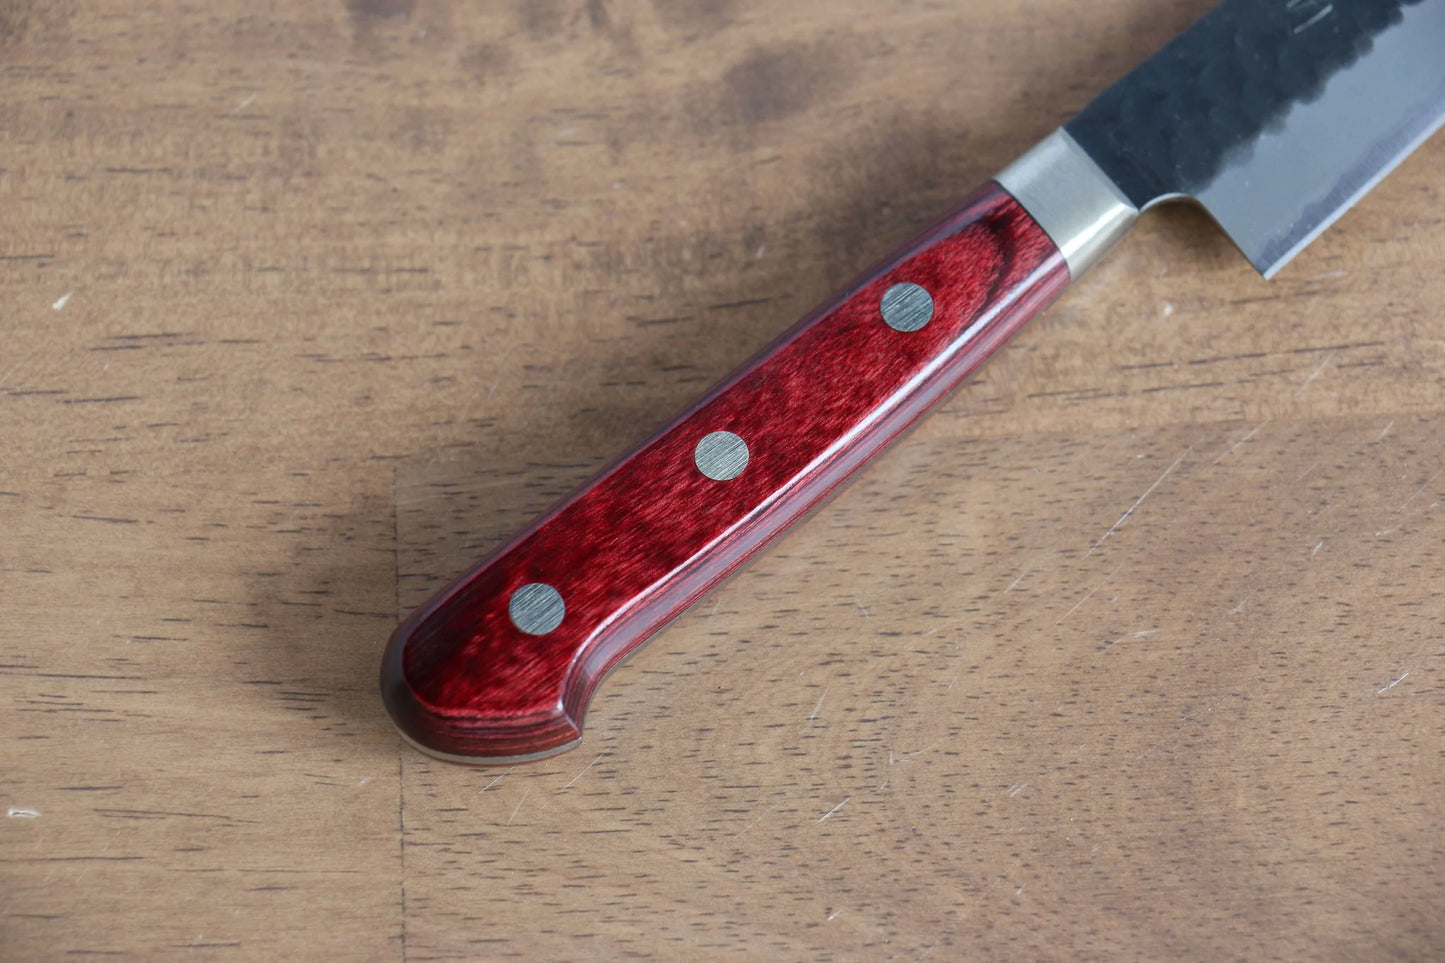 Hochwertiges handgeschmiedetes japanisches Messer – Seisuke Mehrzweck-Kleinmesser Kurouchi superblauer Stahl 135 mm